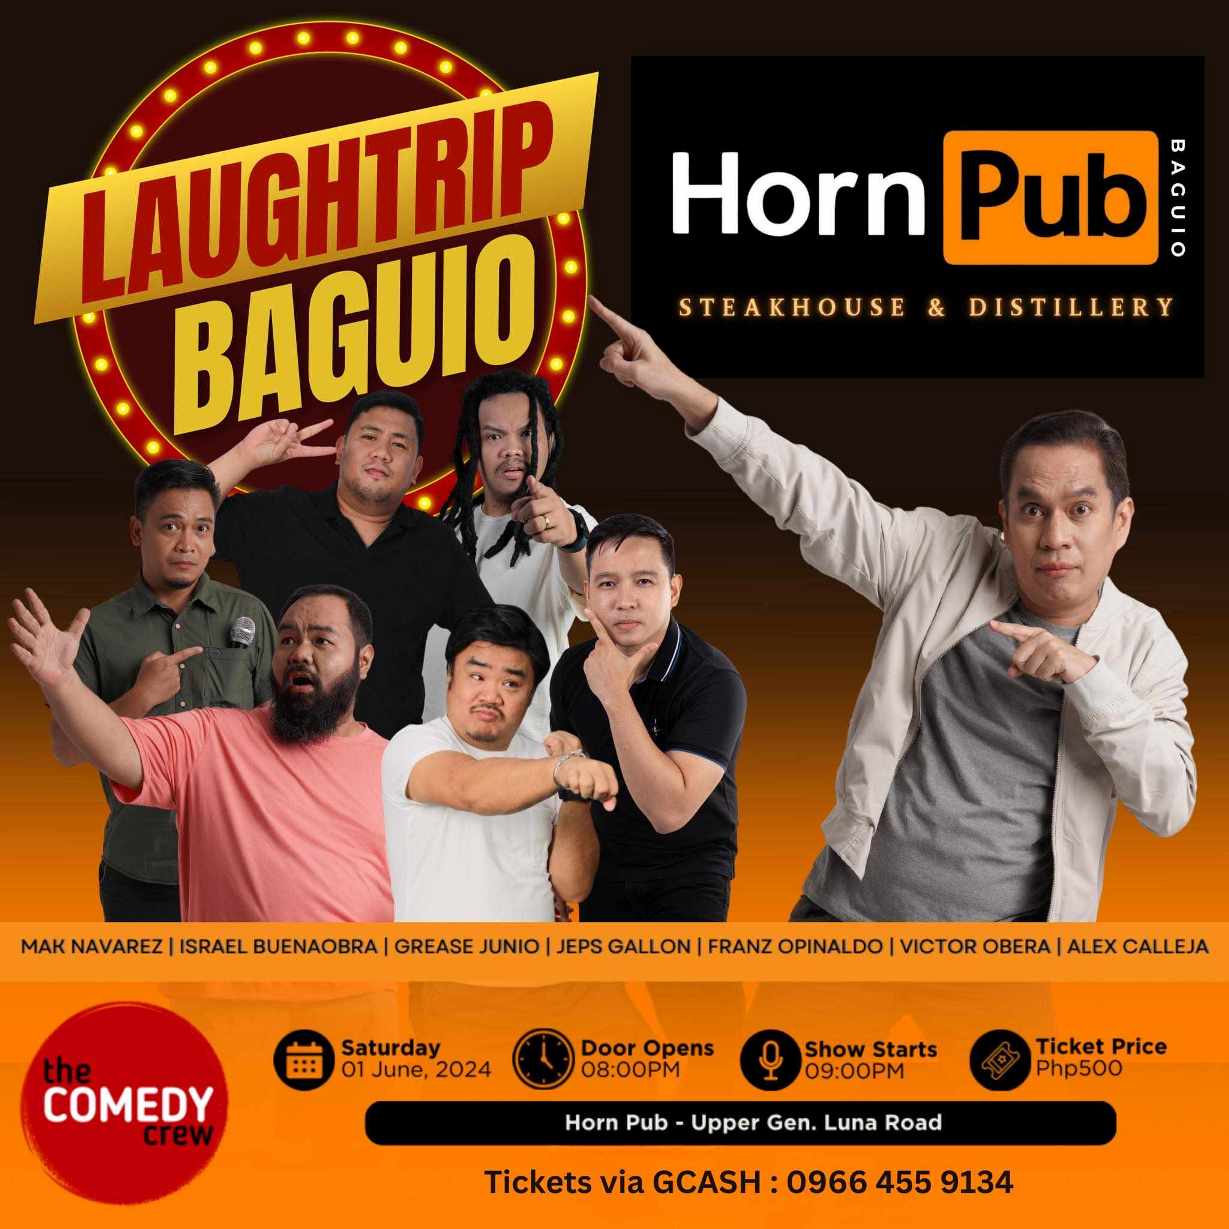 Laughtrip Baguio With Alex Calleja at HornPub